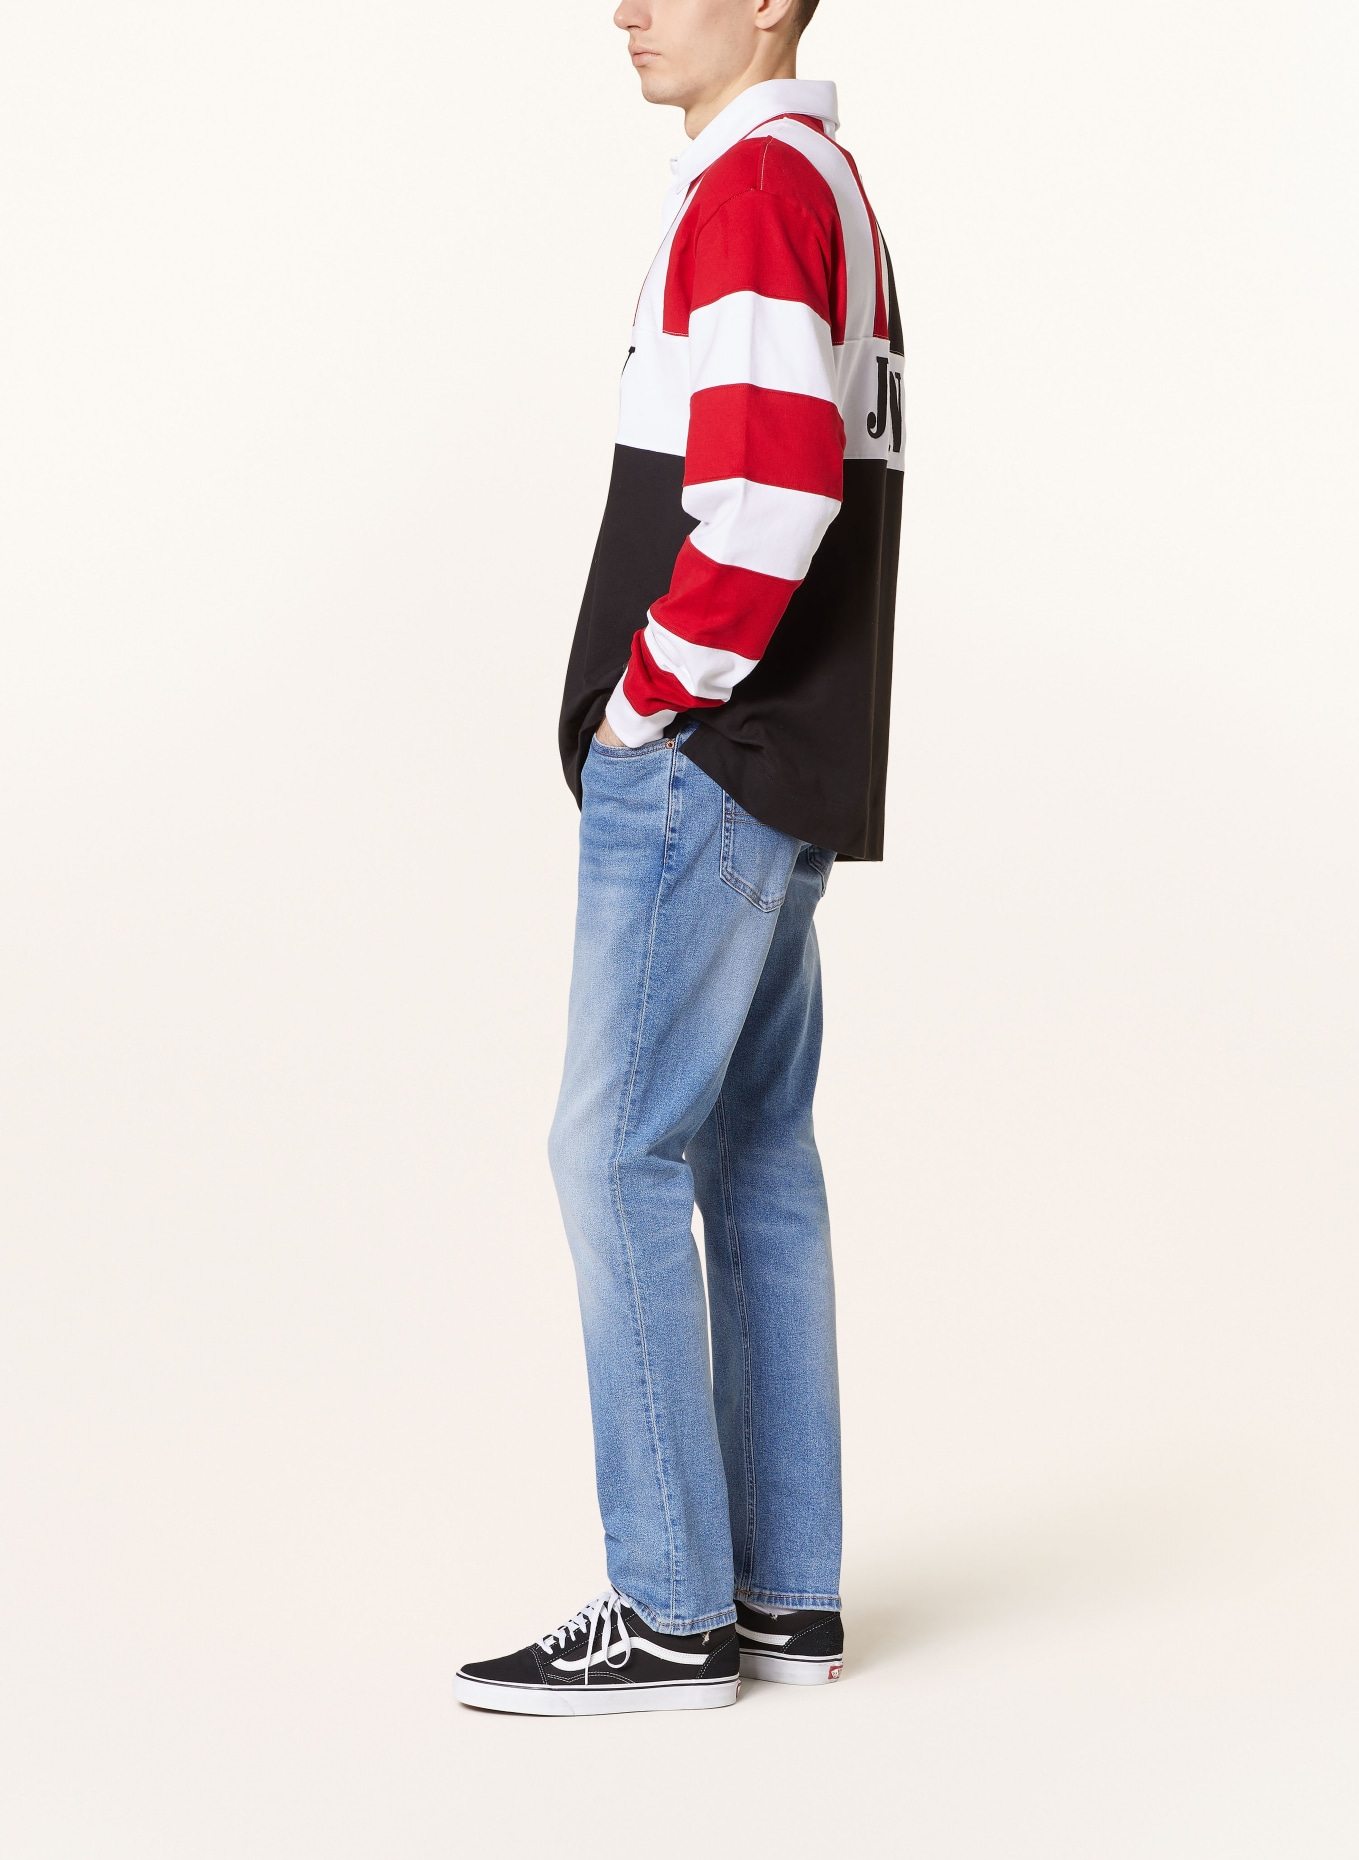 TOMMY JEANS Jeans SCANTON Slim Fit, Color: 1AB Denim Light (Image 4)